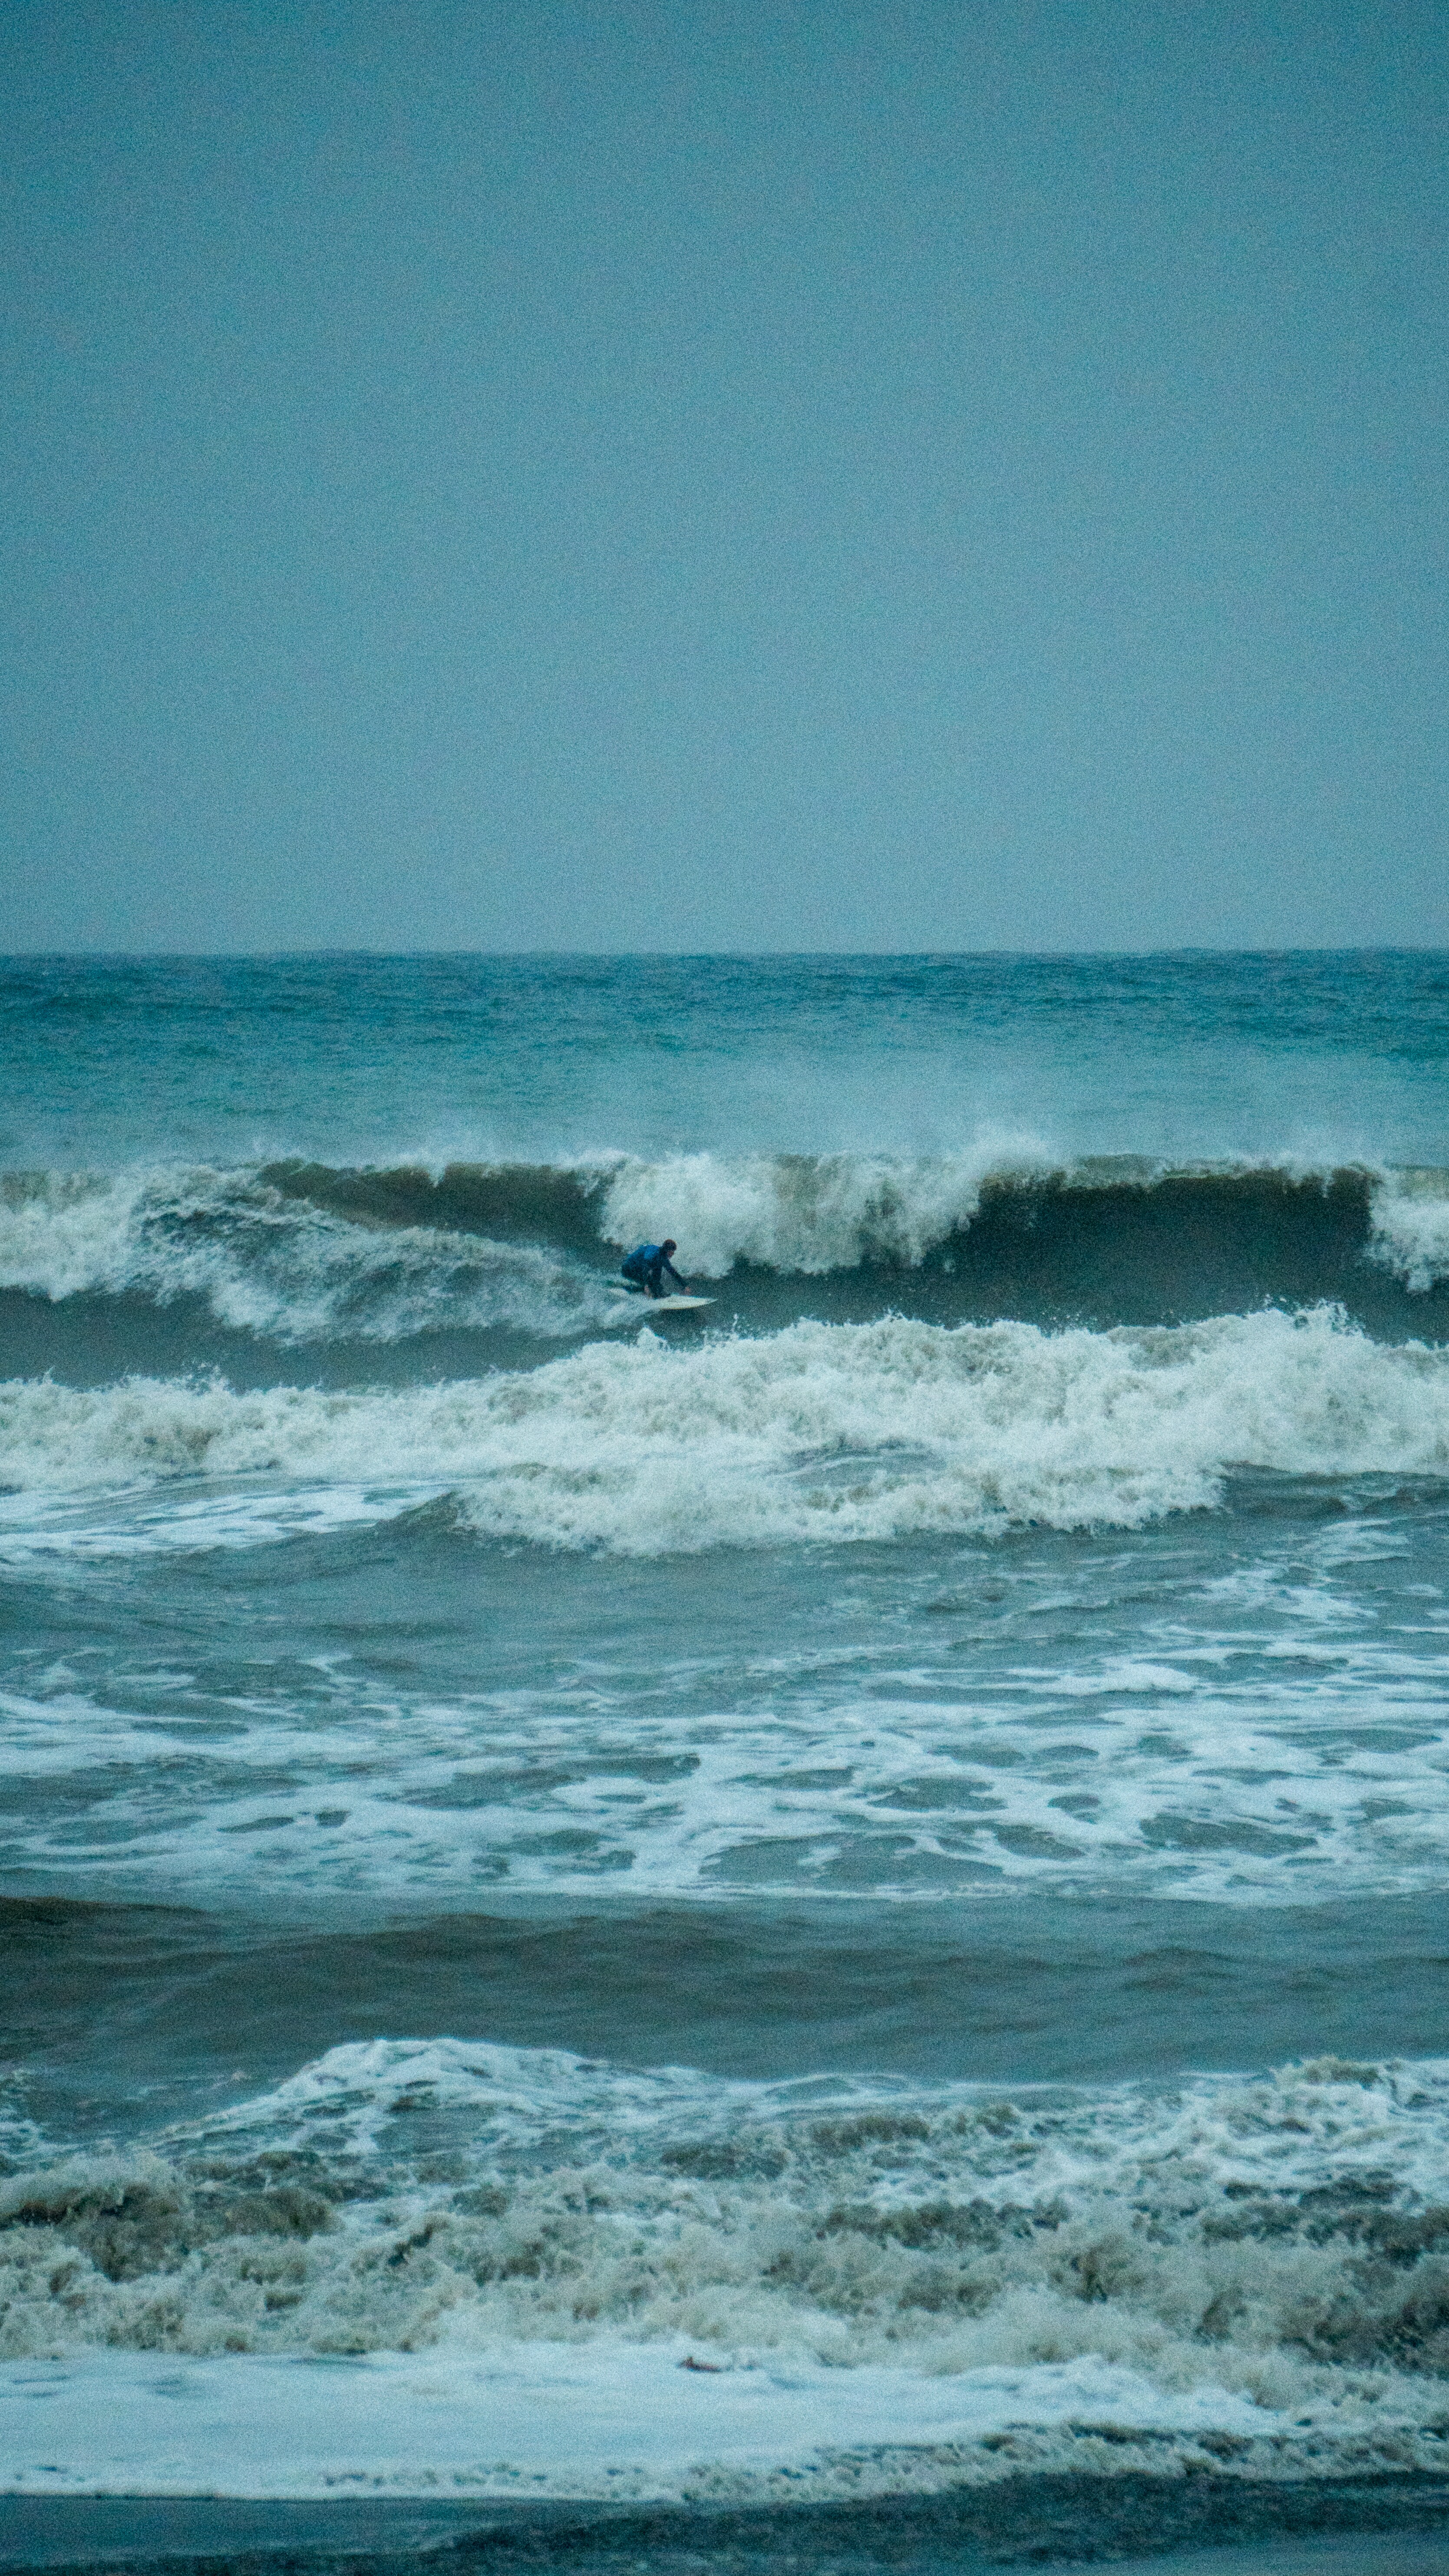 In photos... Rincón de la Victoria surfers ride biggest waves since the 1980s